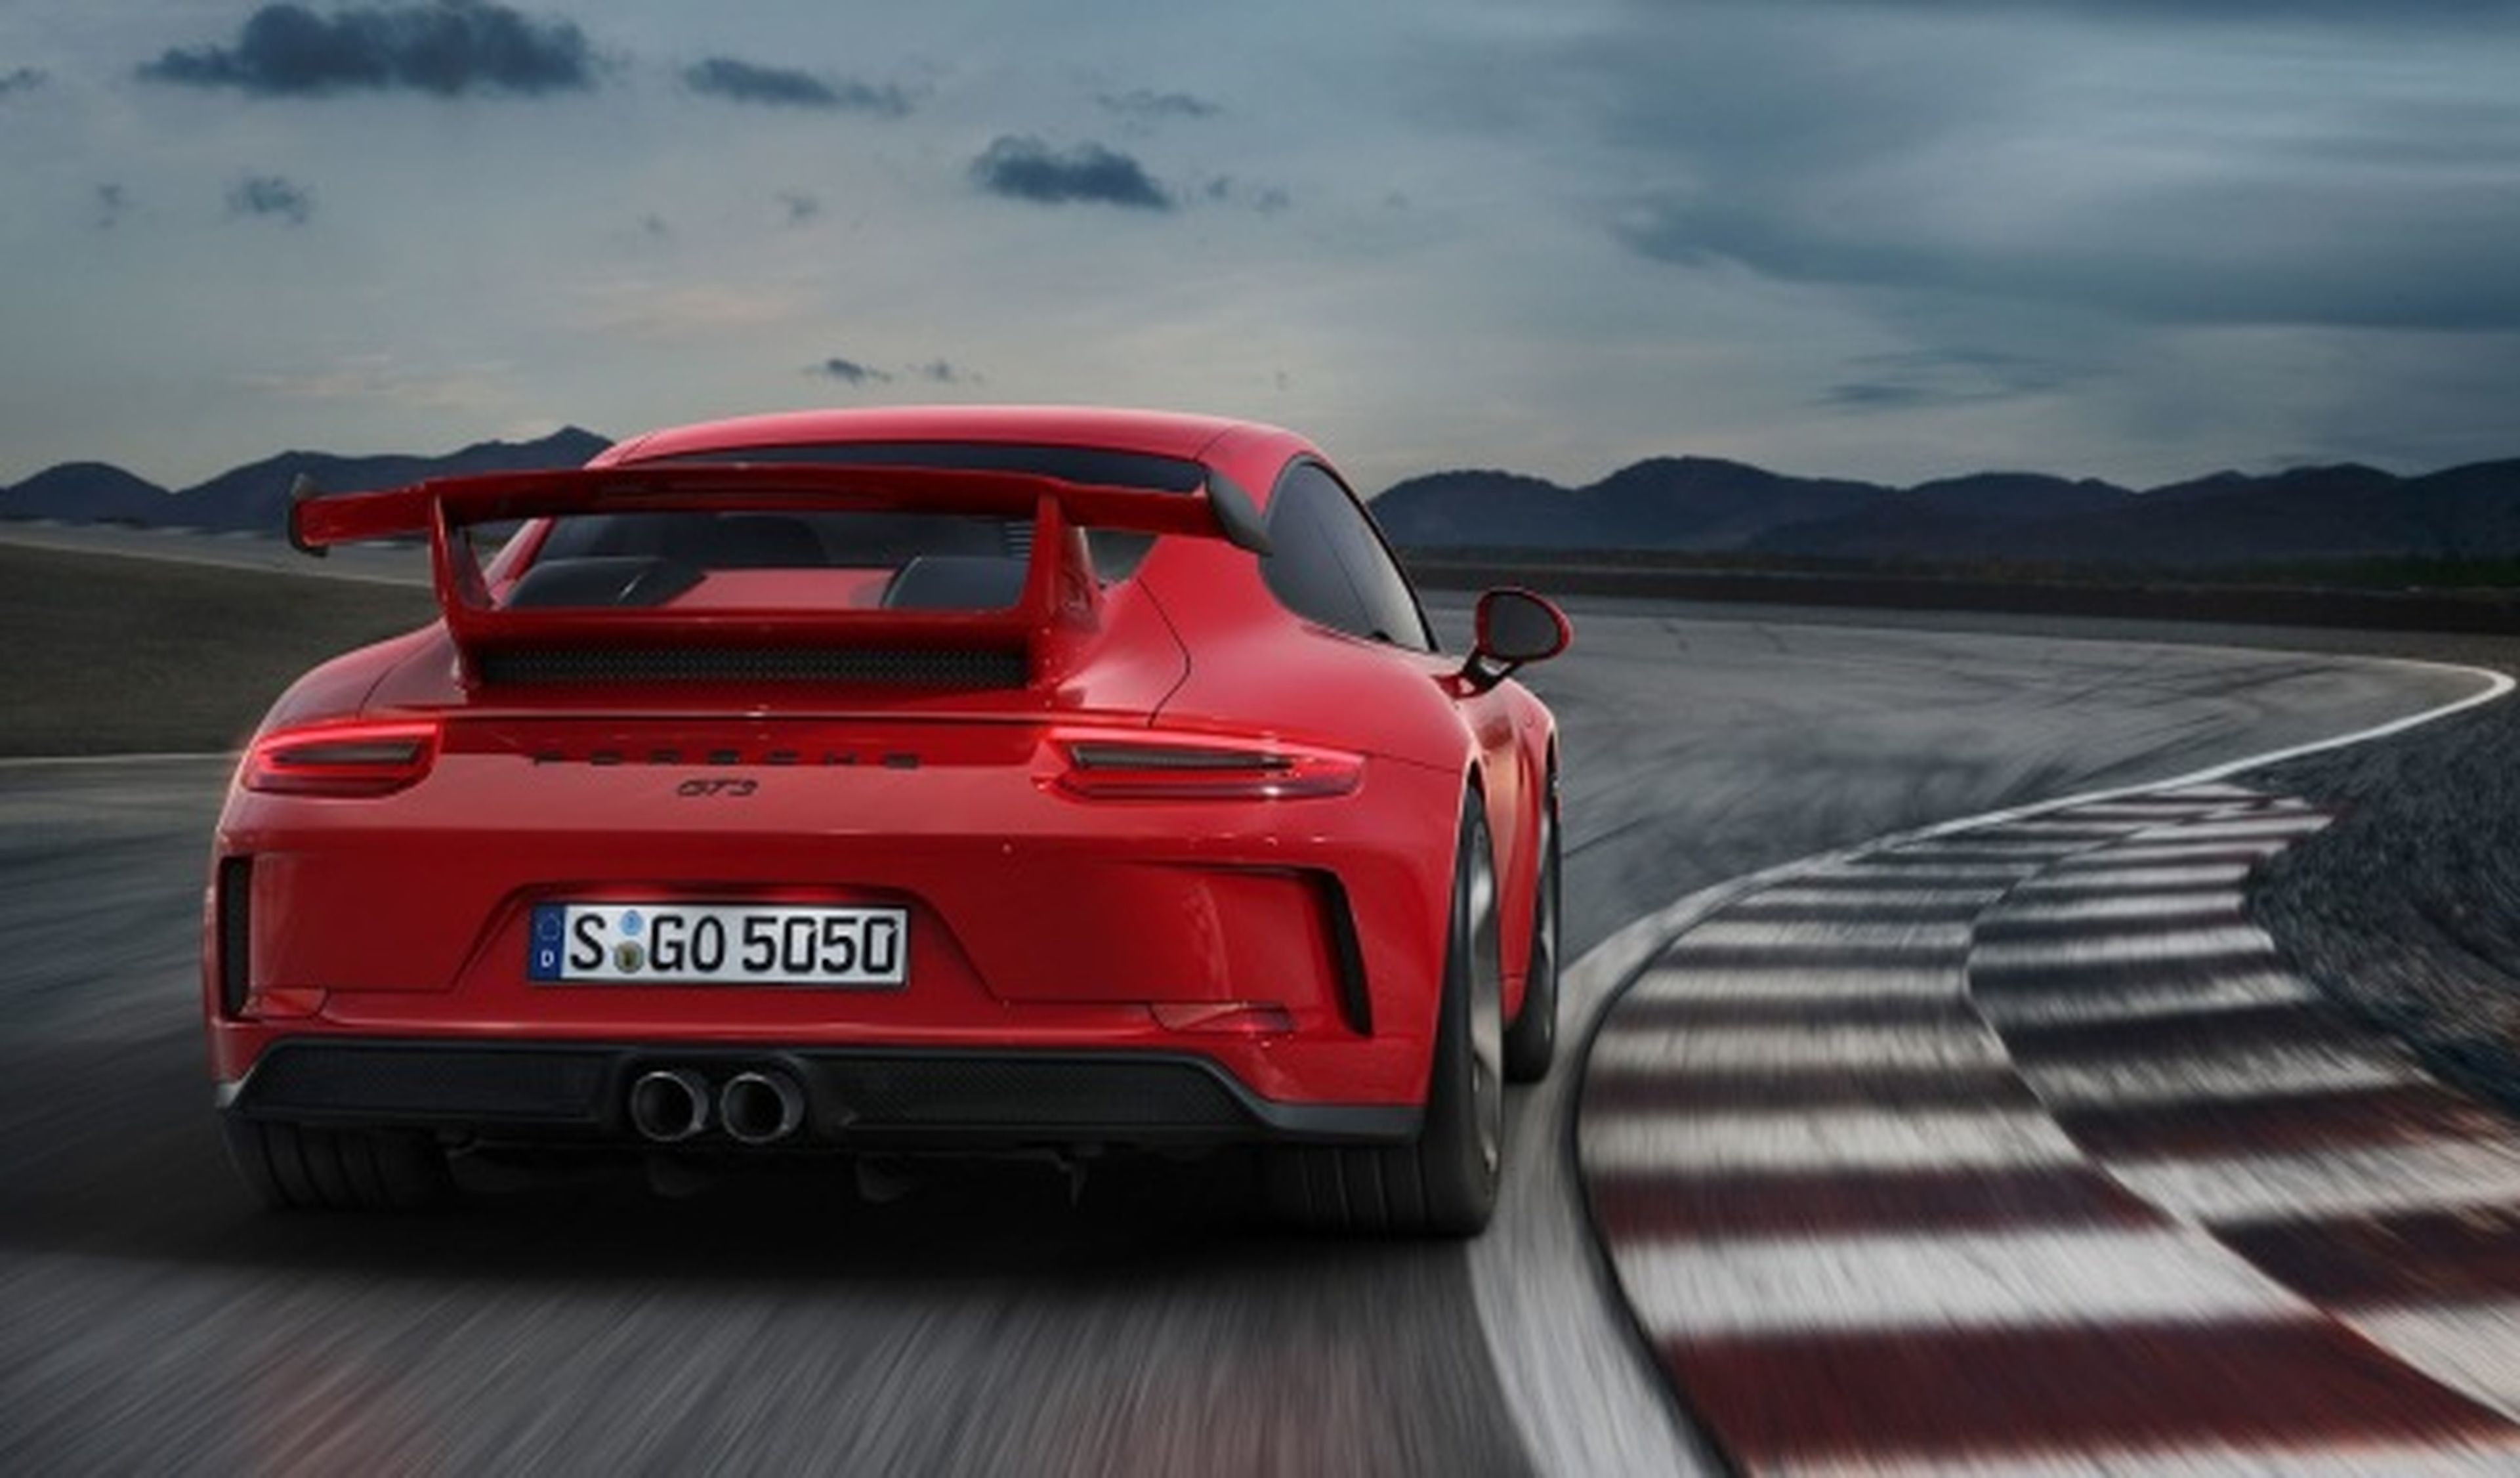 A Porsche no le importan los tiempos en Nürburgring, ¿o sí?